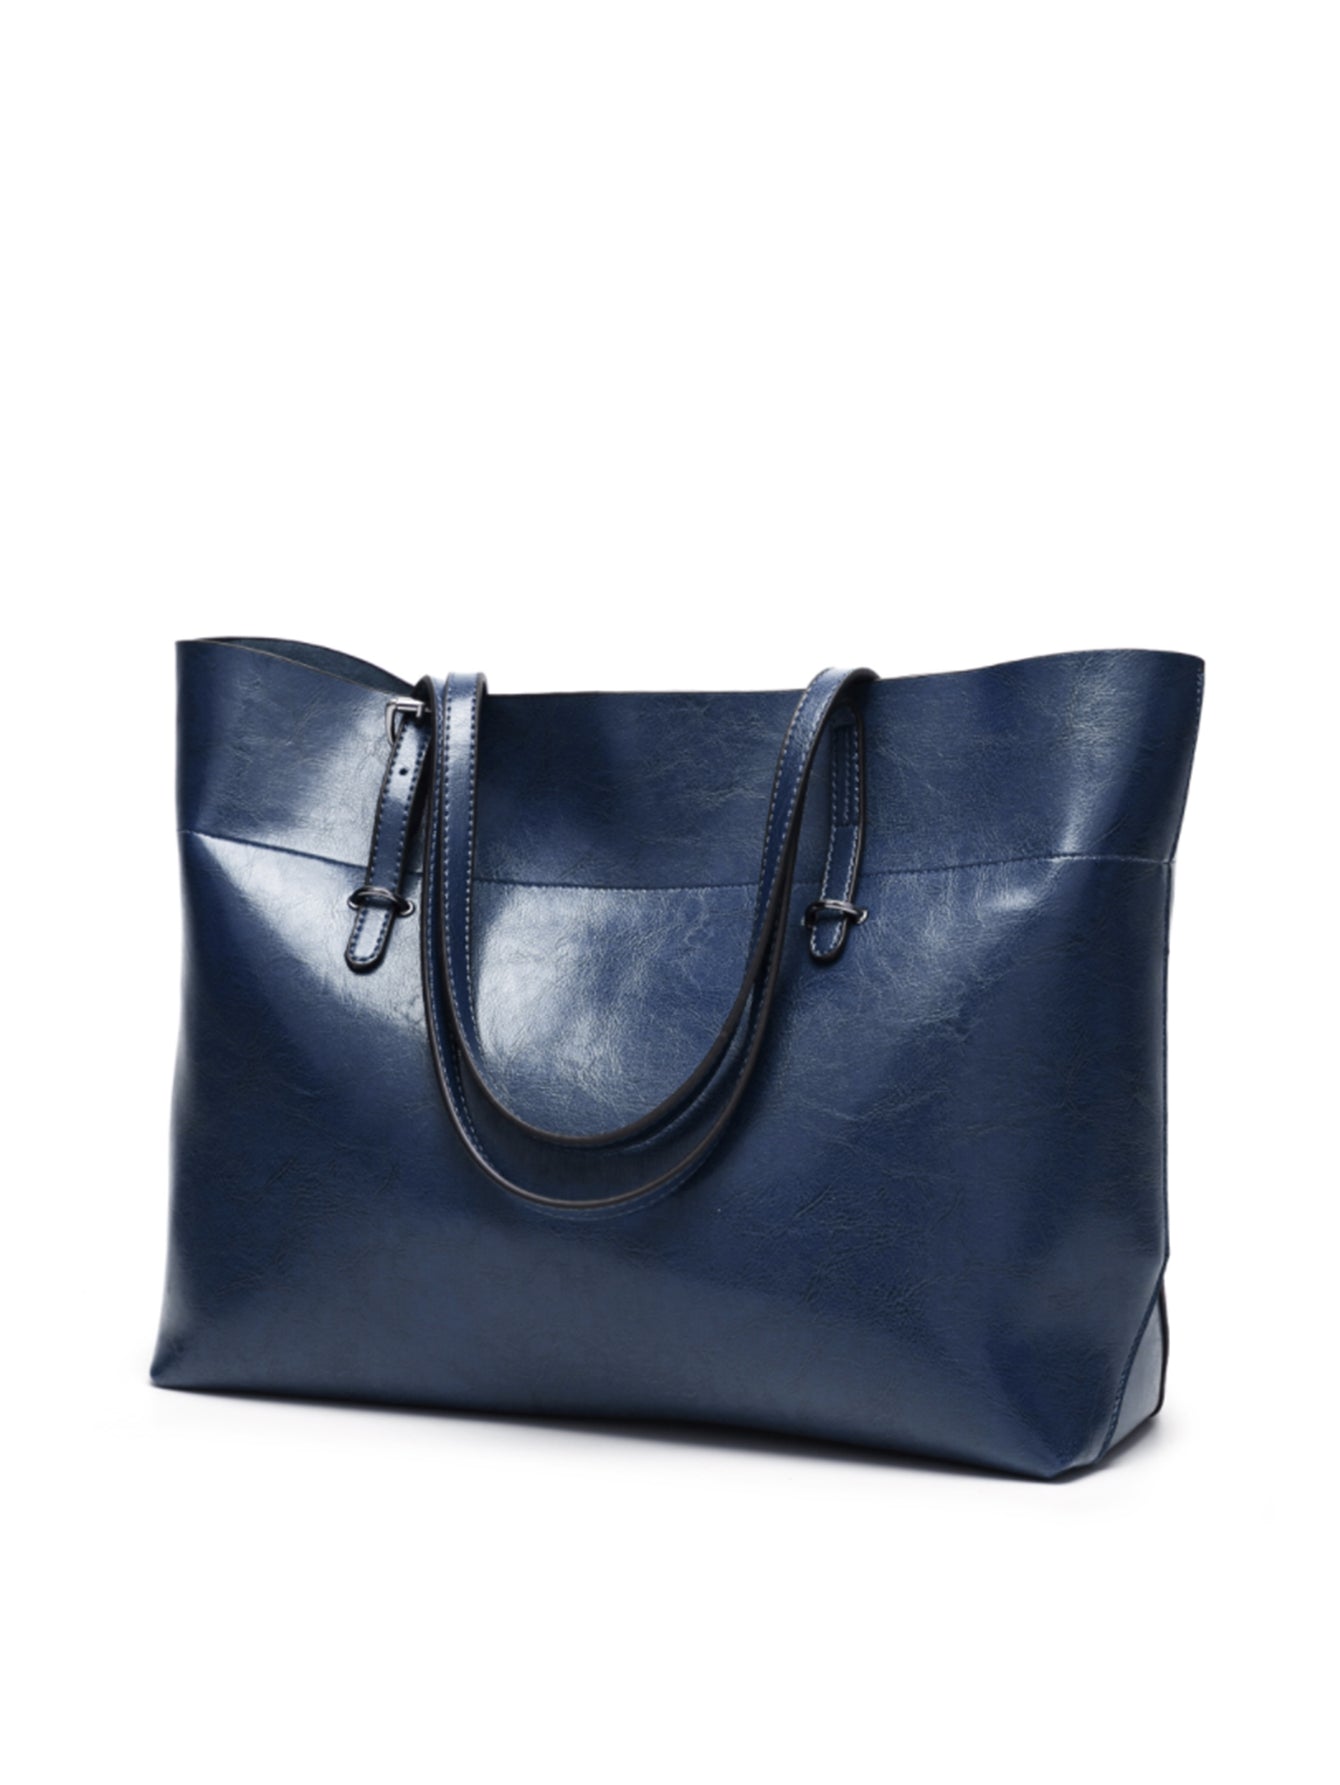 Women Handbags Designer Top Handle Tote Large Purses Ladies Shoulder Bag Sai Feel